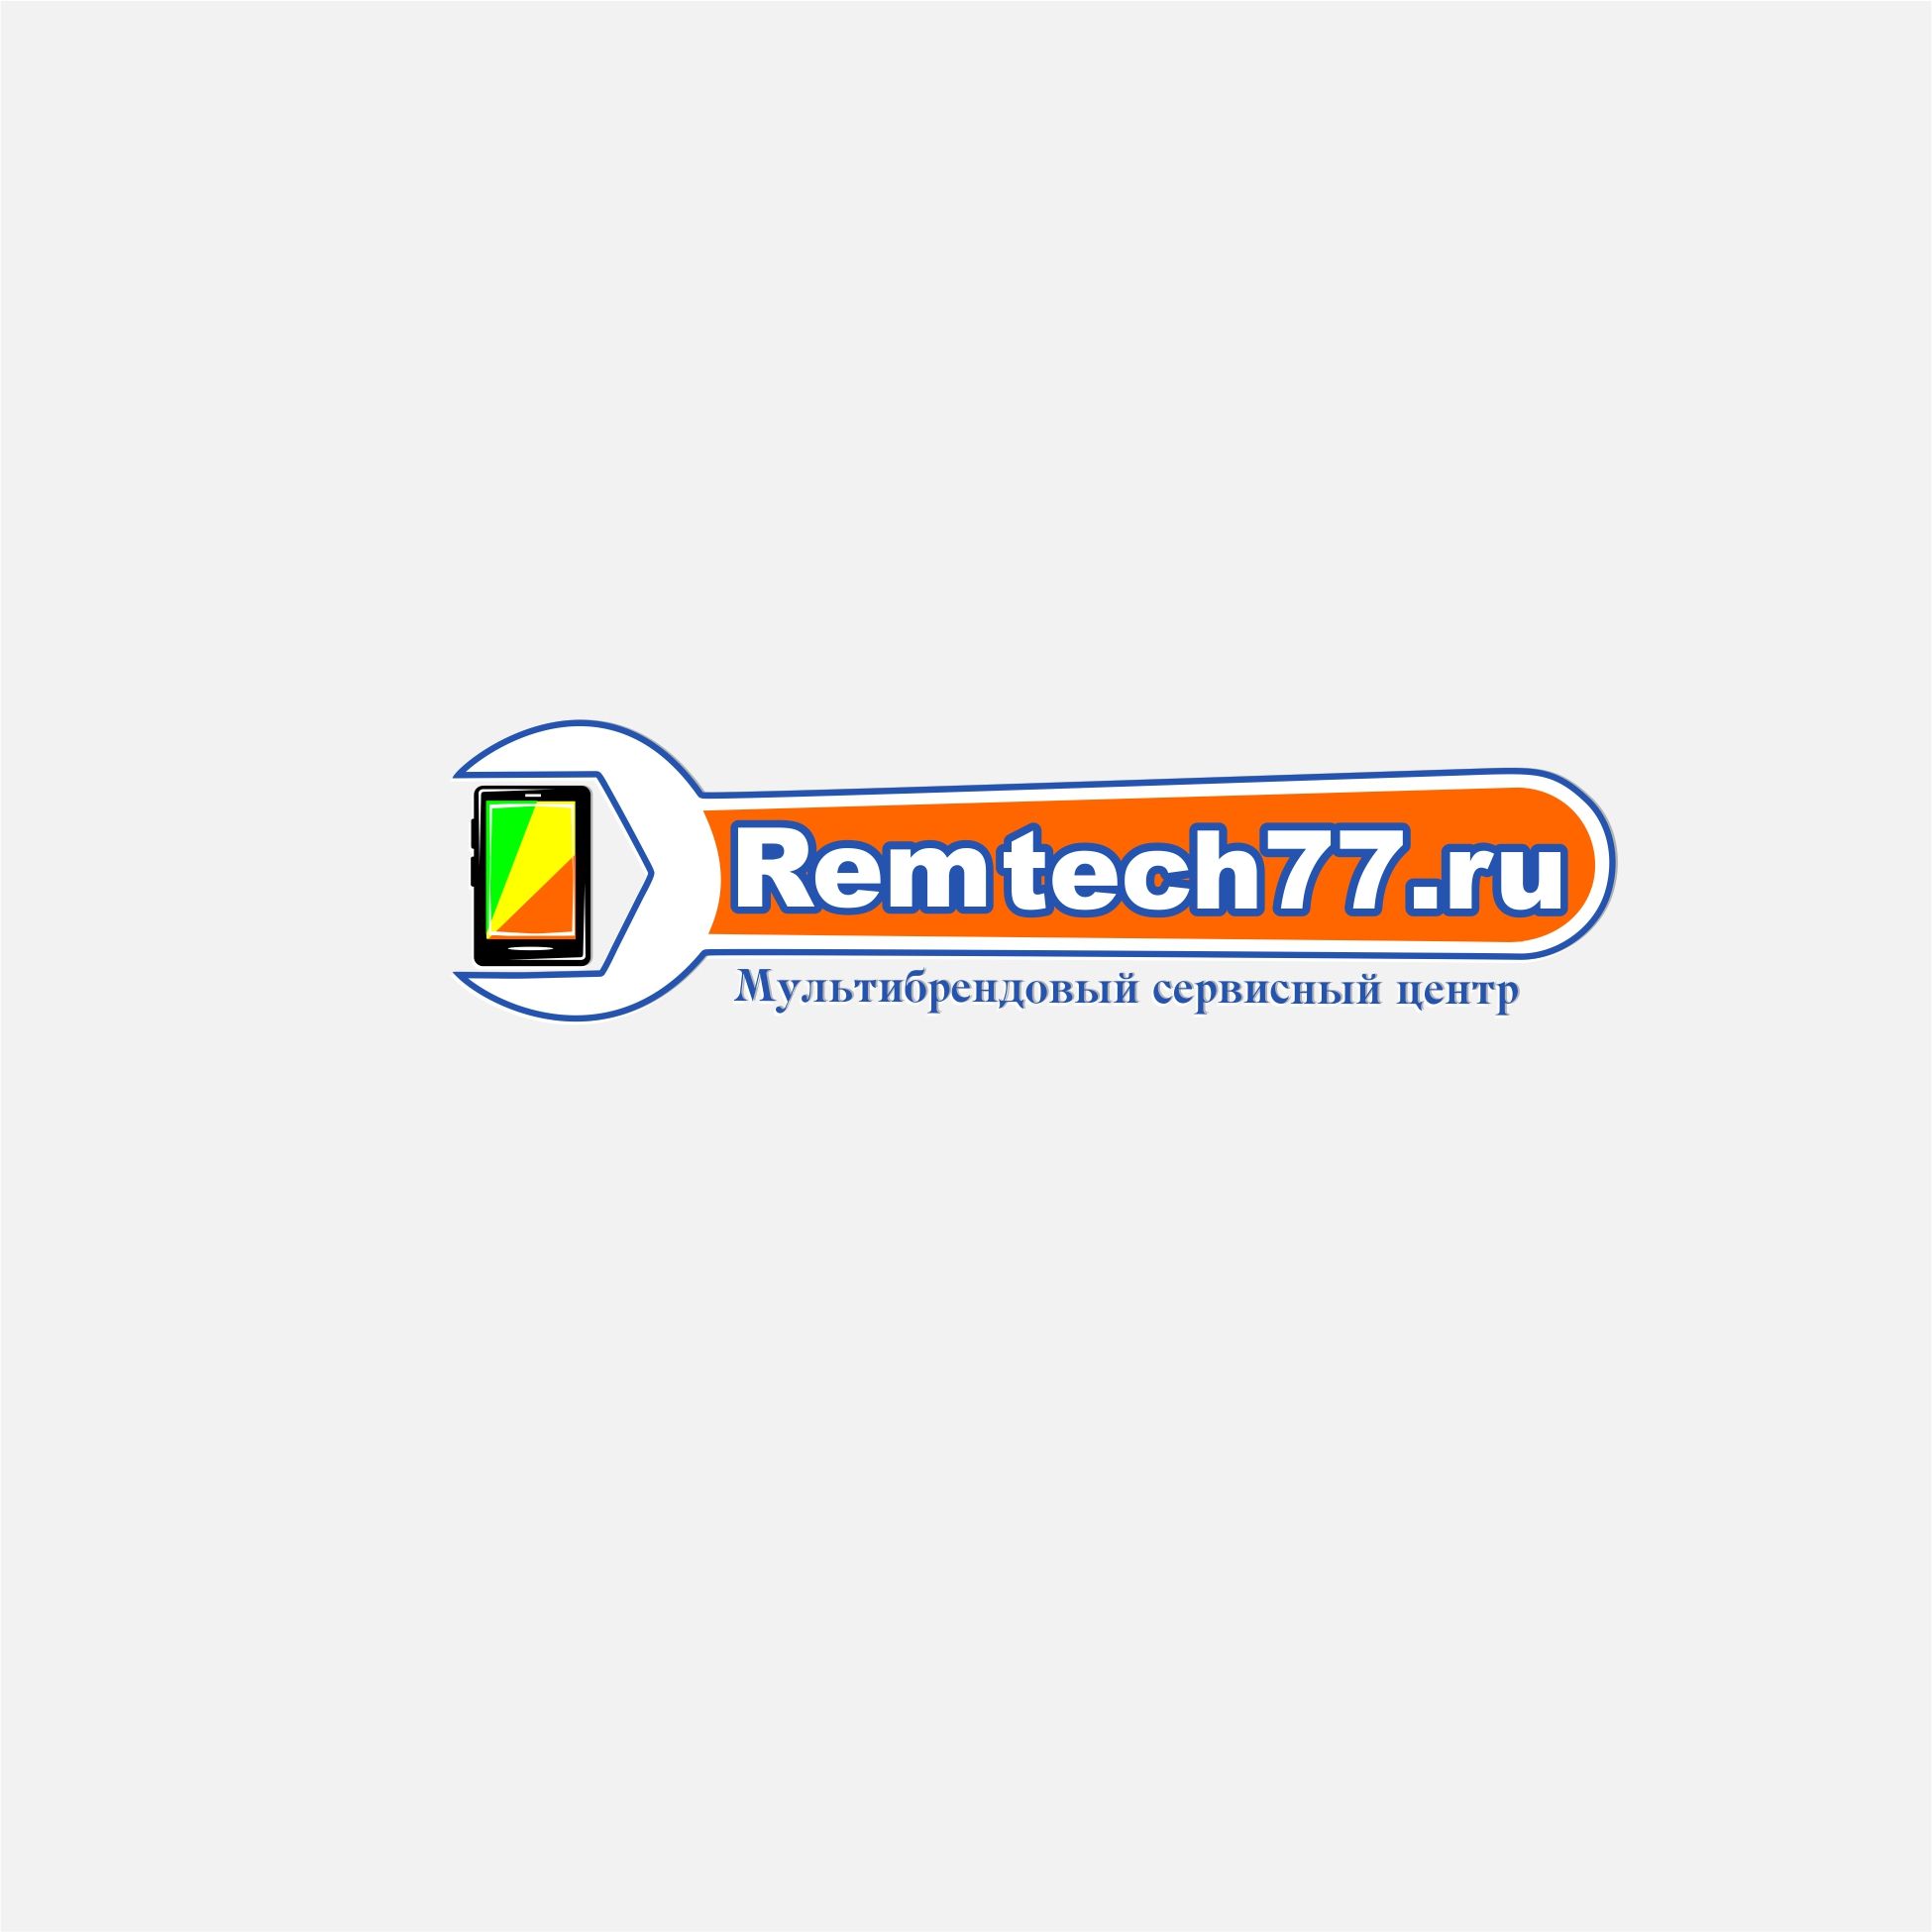 Лого и фирменный стиль для Логотип для СЦ remtech77.ru - дизайнер YUNGERTI